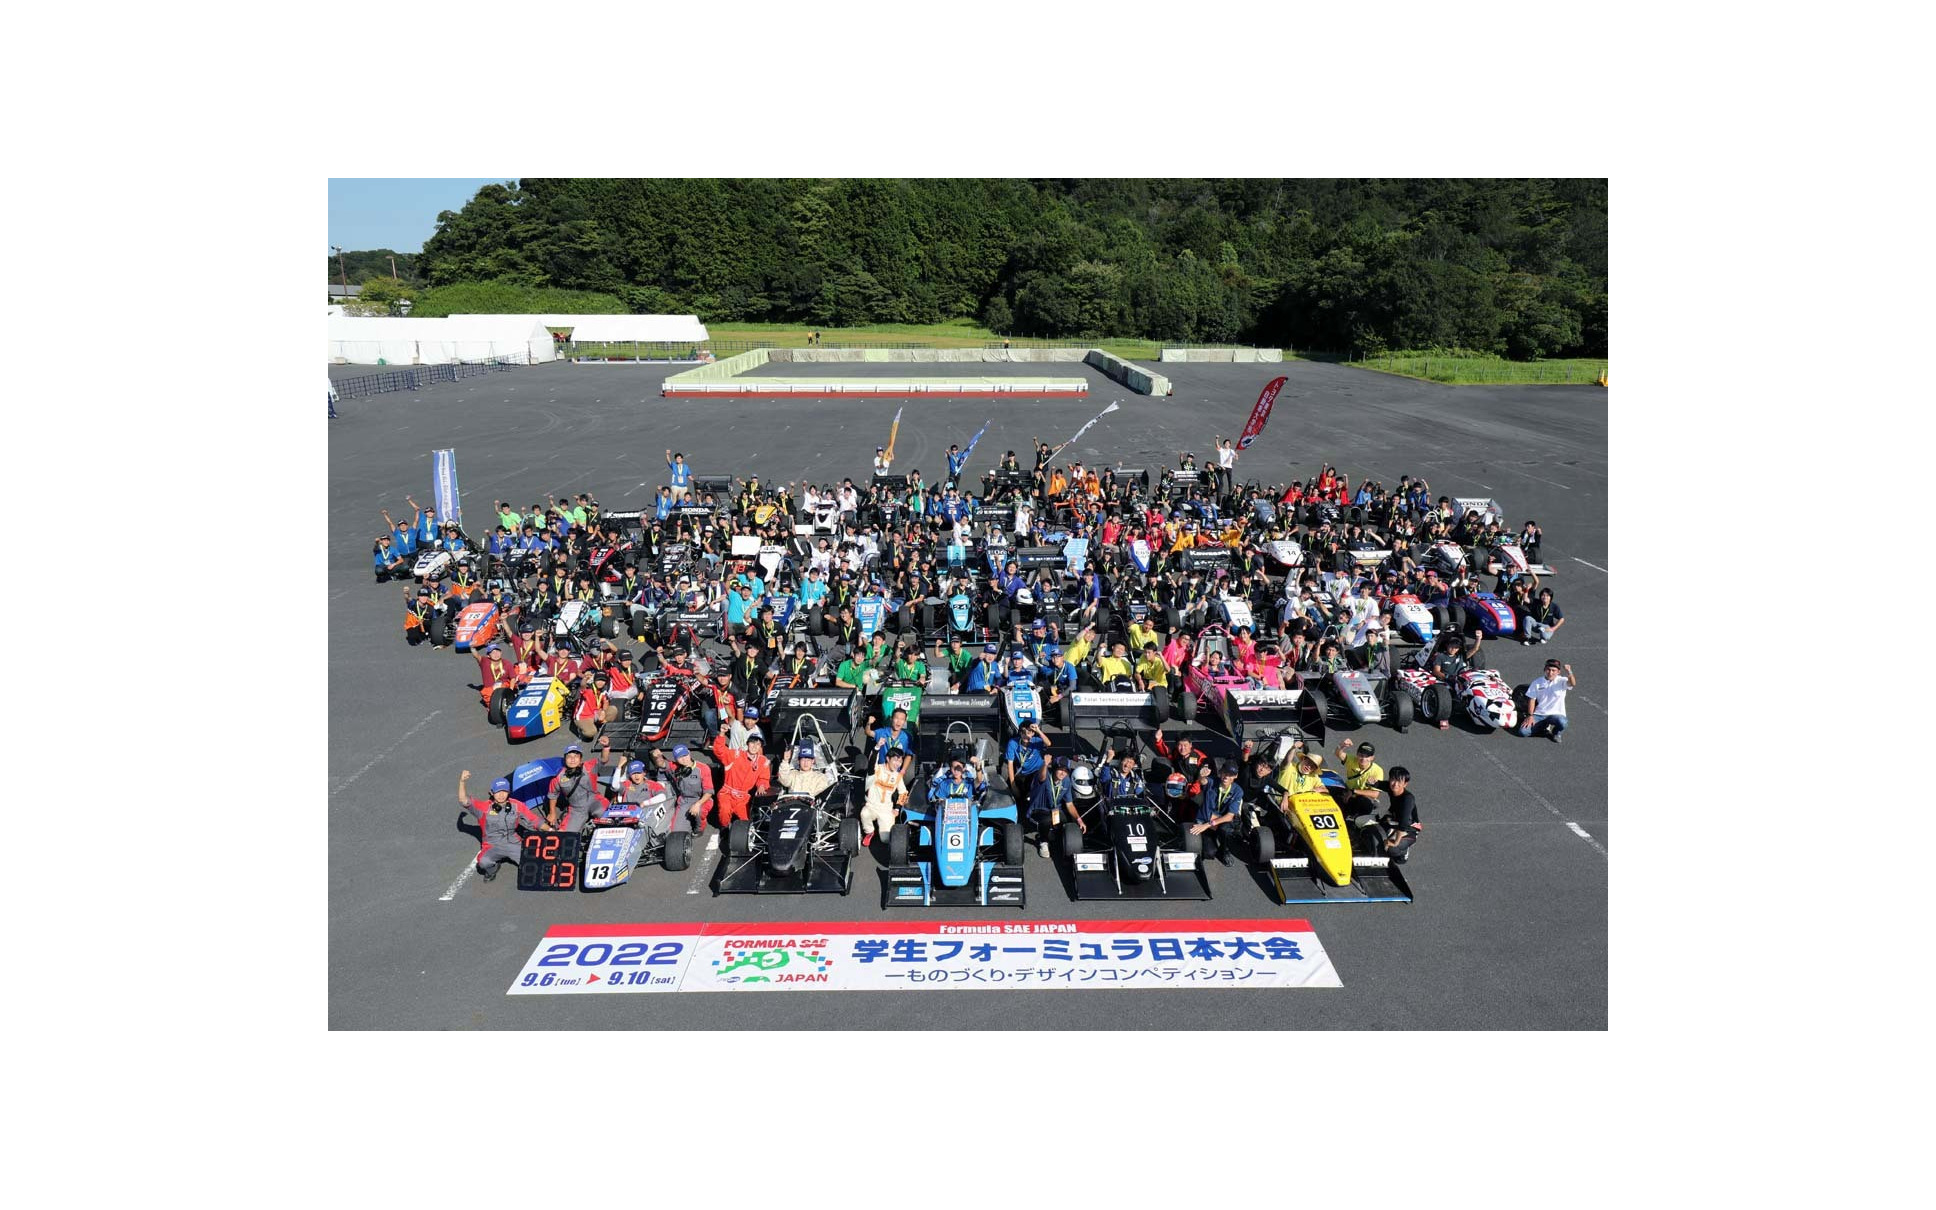 「学生フォーミュラ2022」は、エコパ(静岡県掛川市)において、計69チームがエントリーして実施された